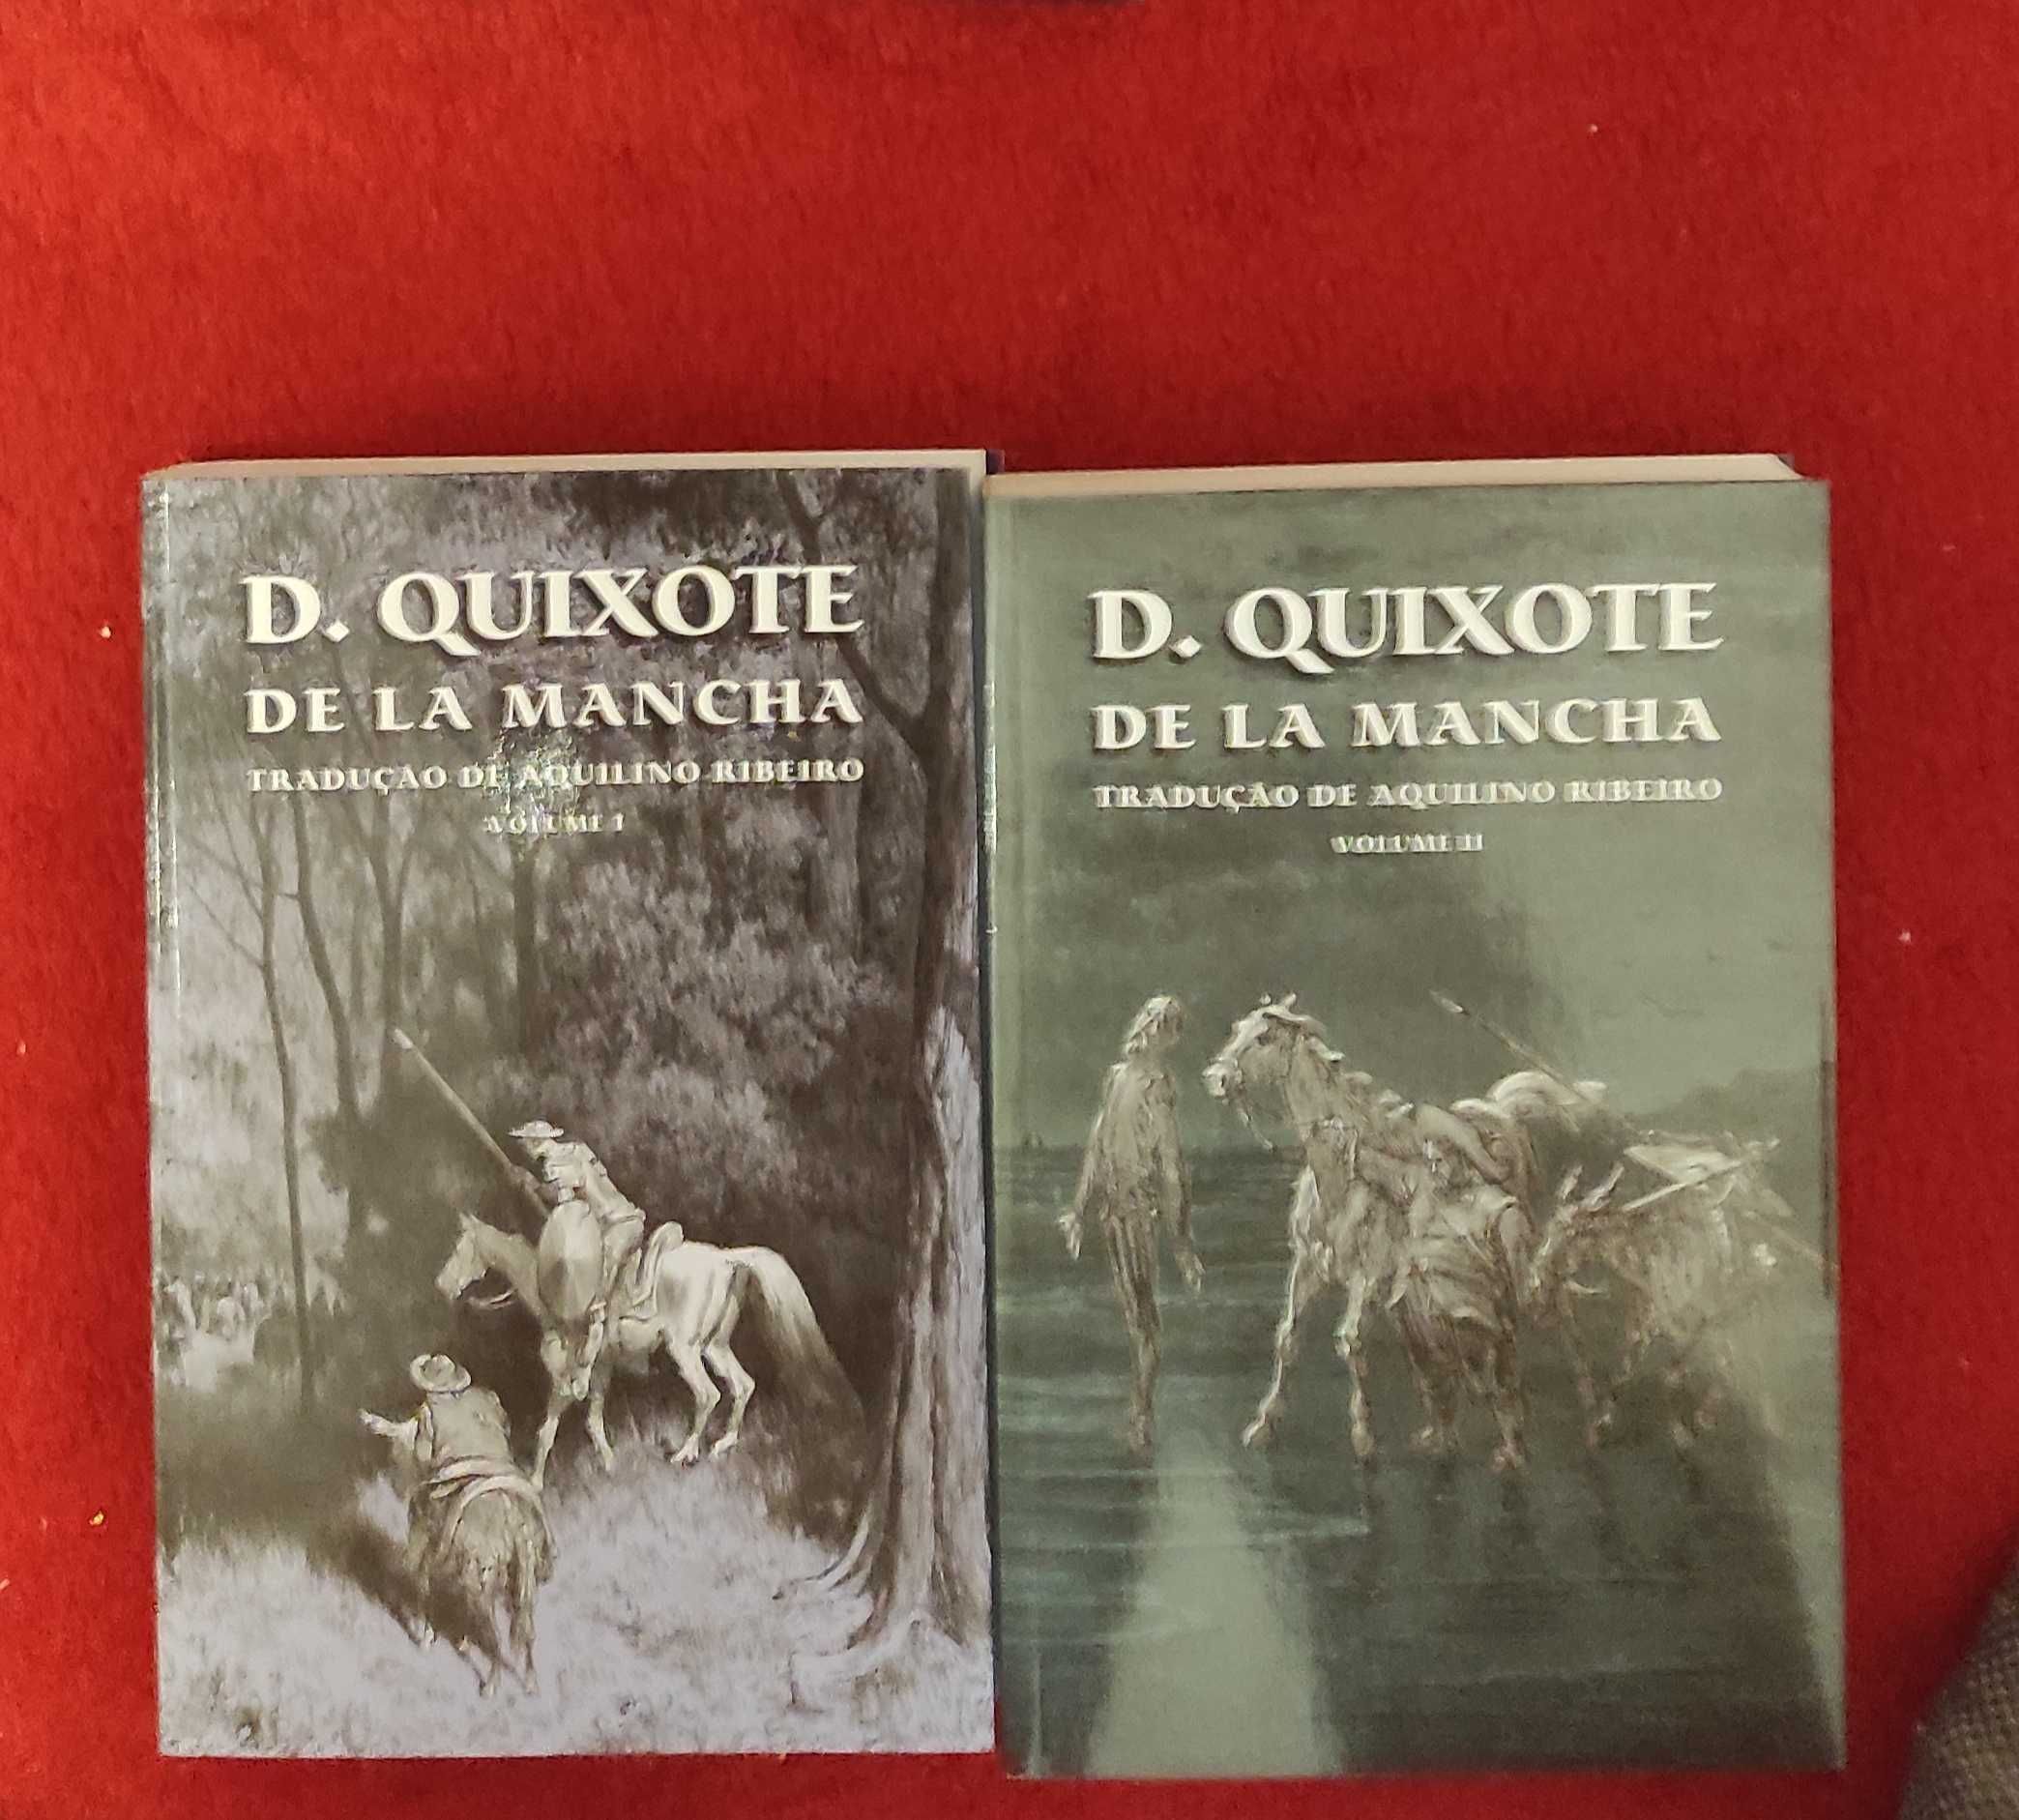 D. Quixote de la Mancha dois volumes como novos